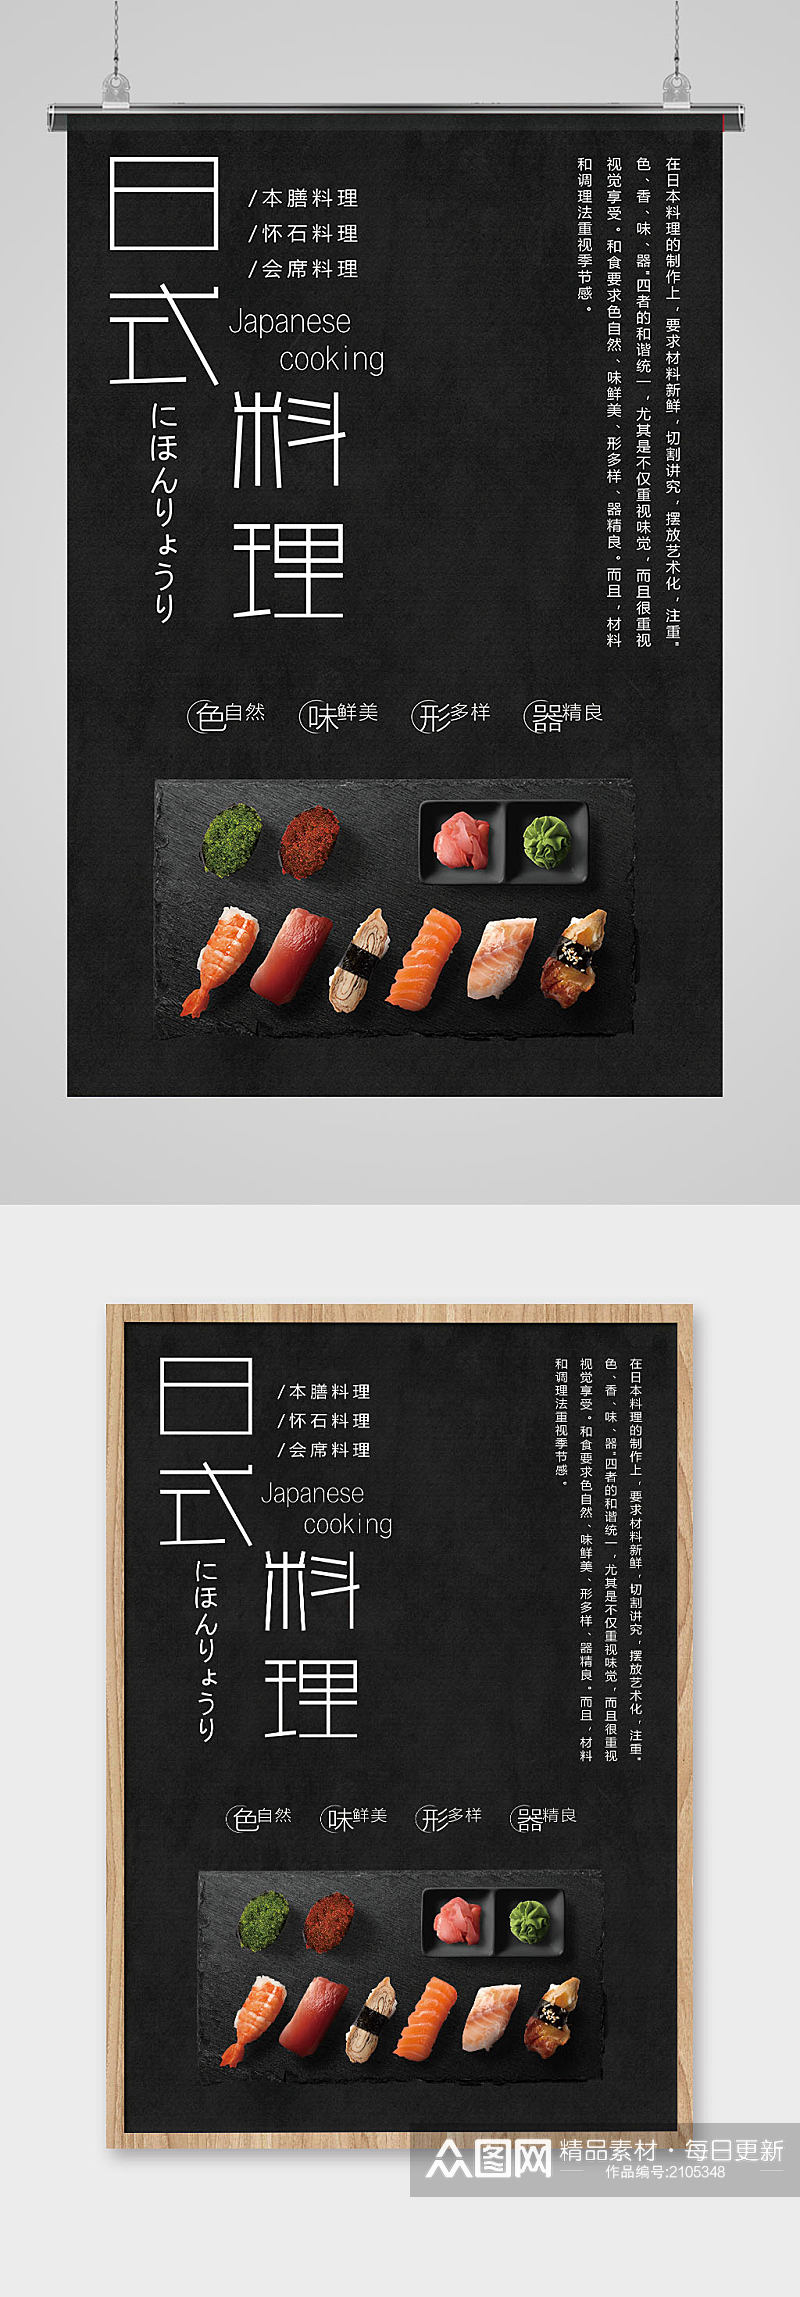 日式料理黑色底海报图片素材